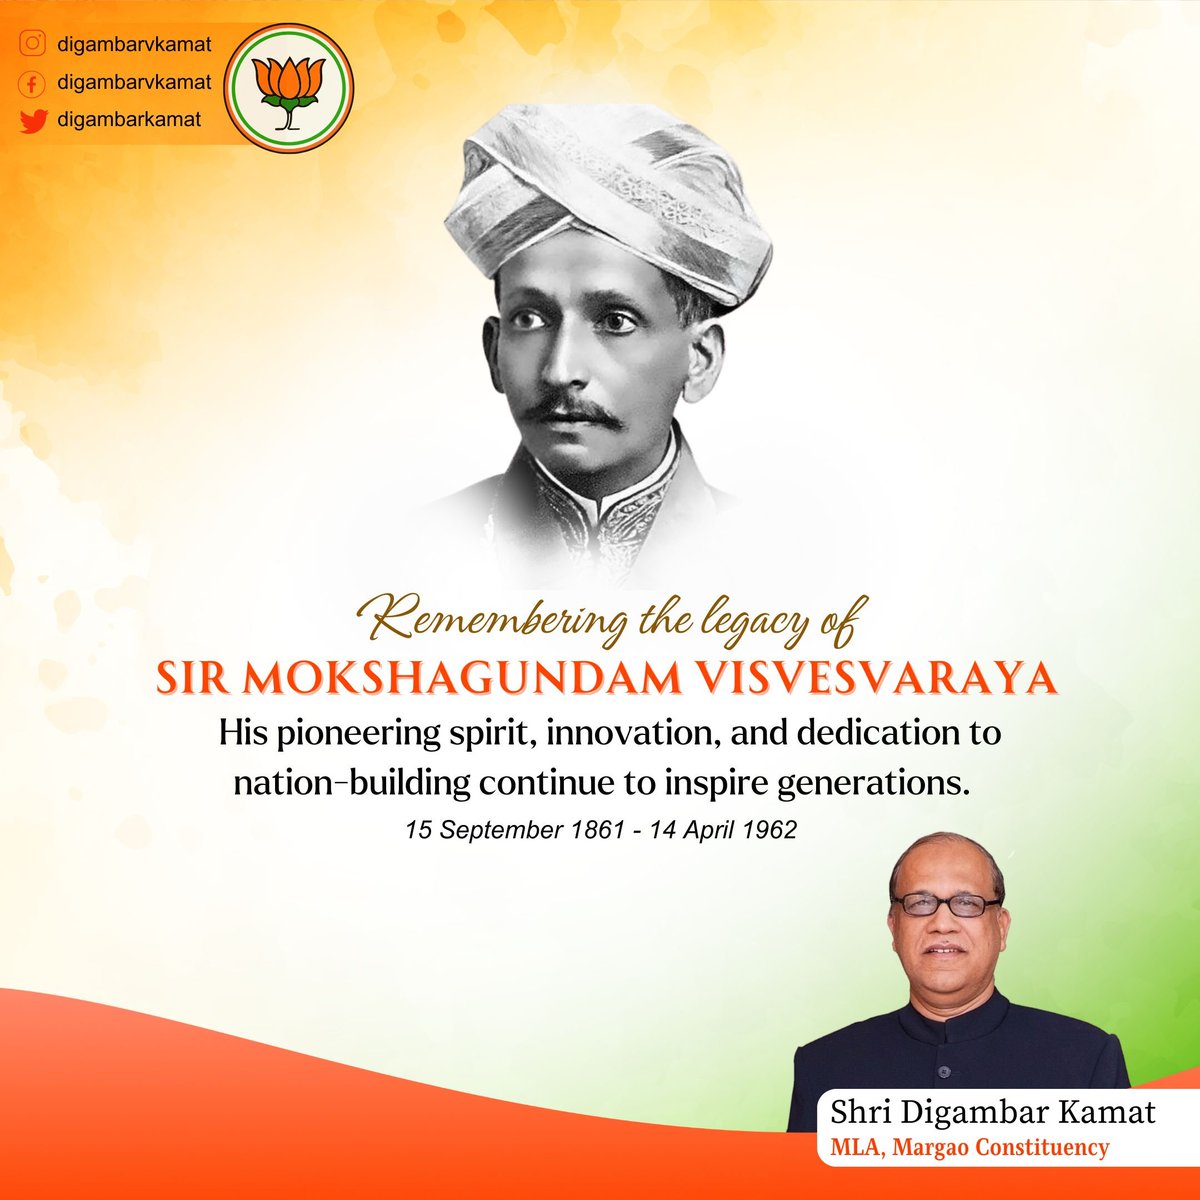 Remembering the visionary Bharat Ratna Sir M Visvesvaraya on his death anniversary. His legacy of innovation and nation-building lives on. #MVisvesvaraya #DigambarKamat #margaomla